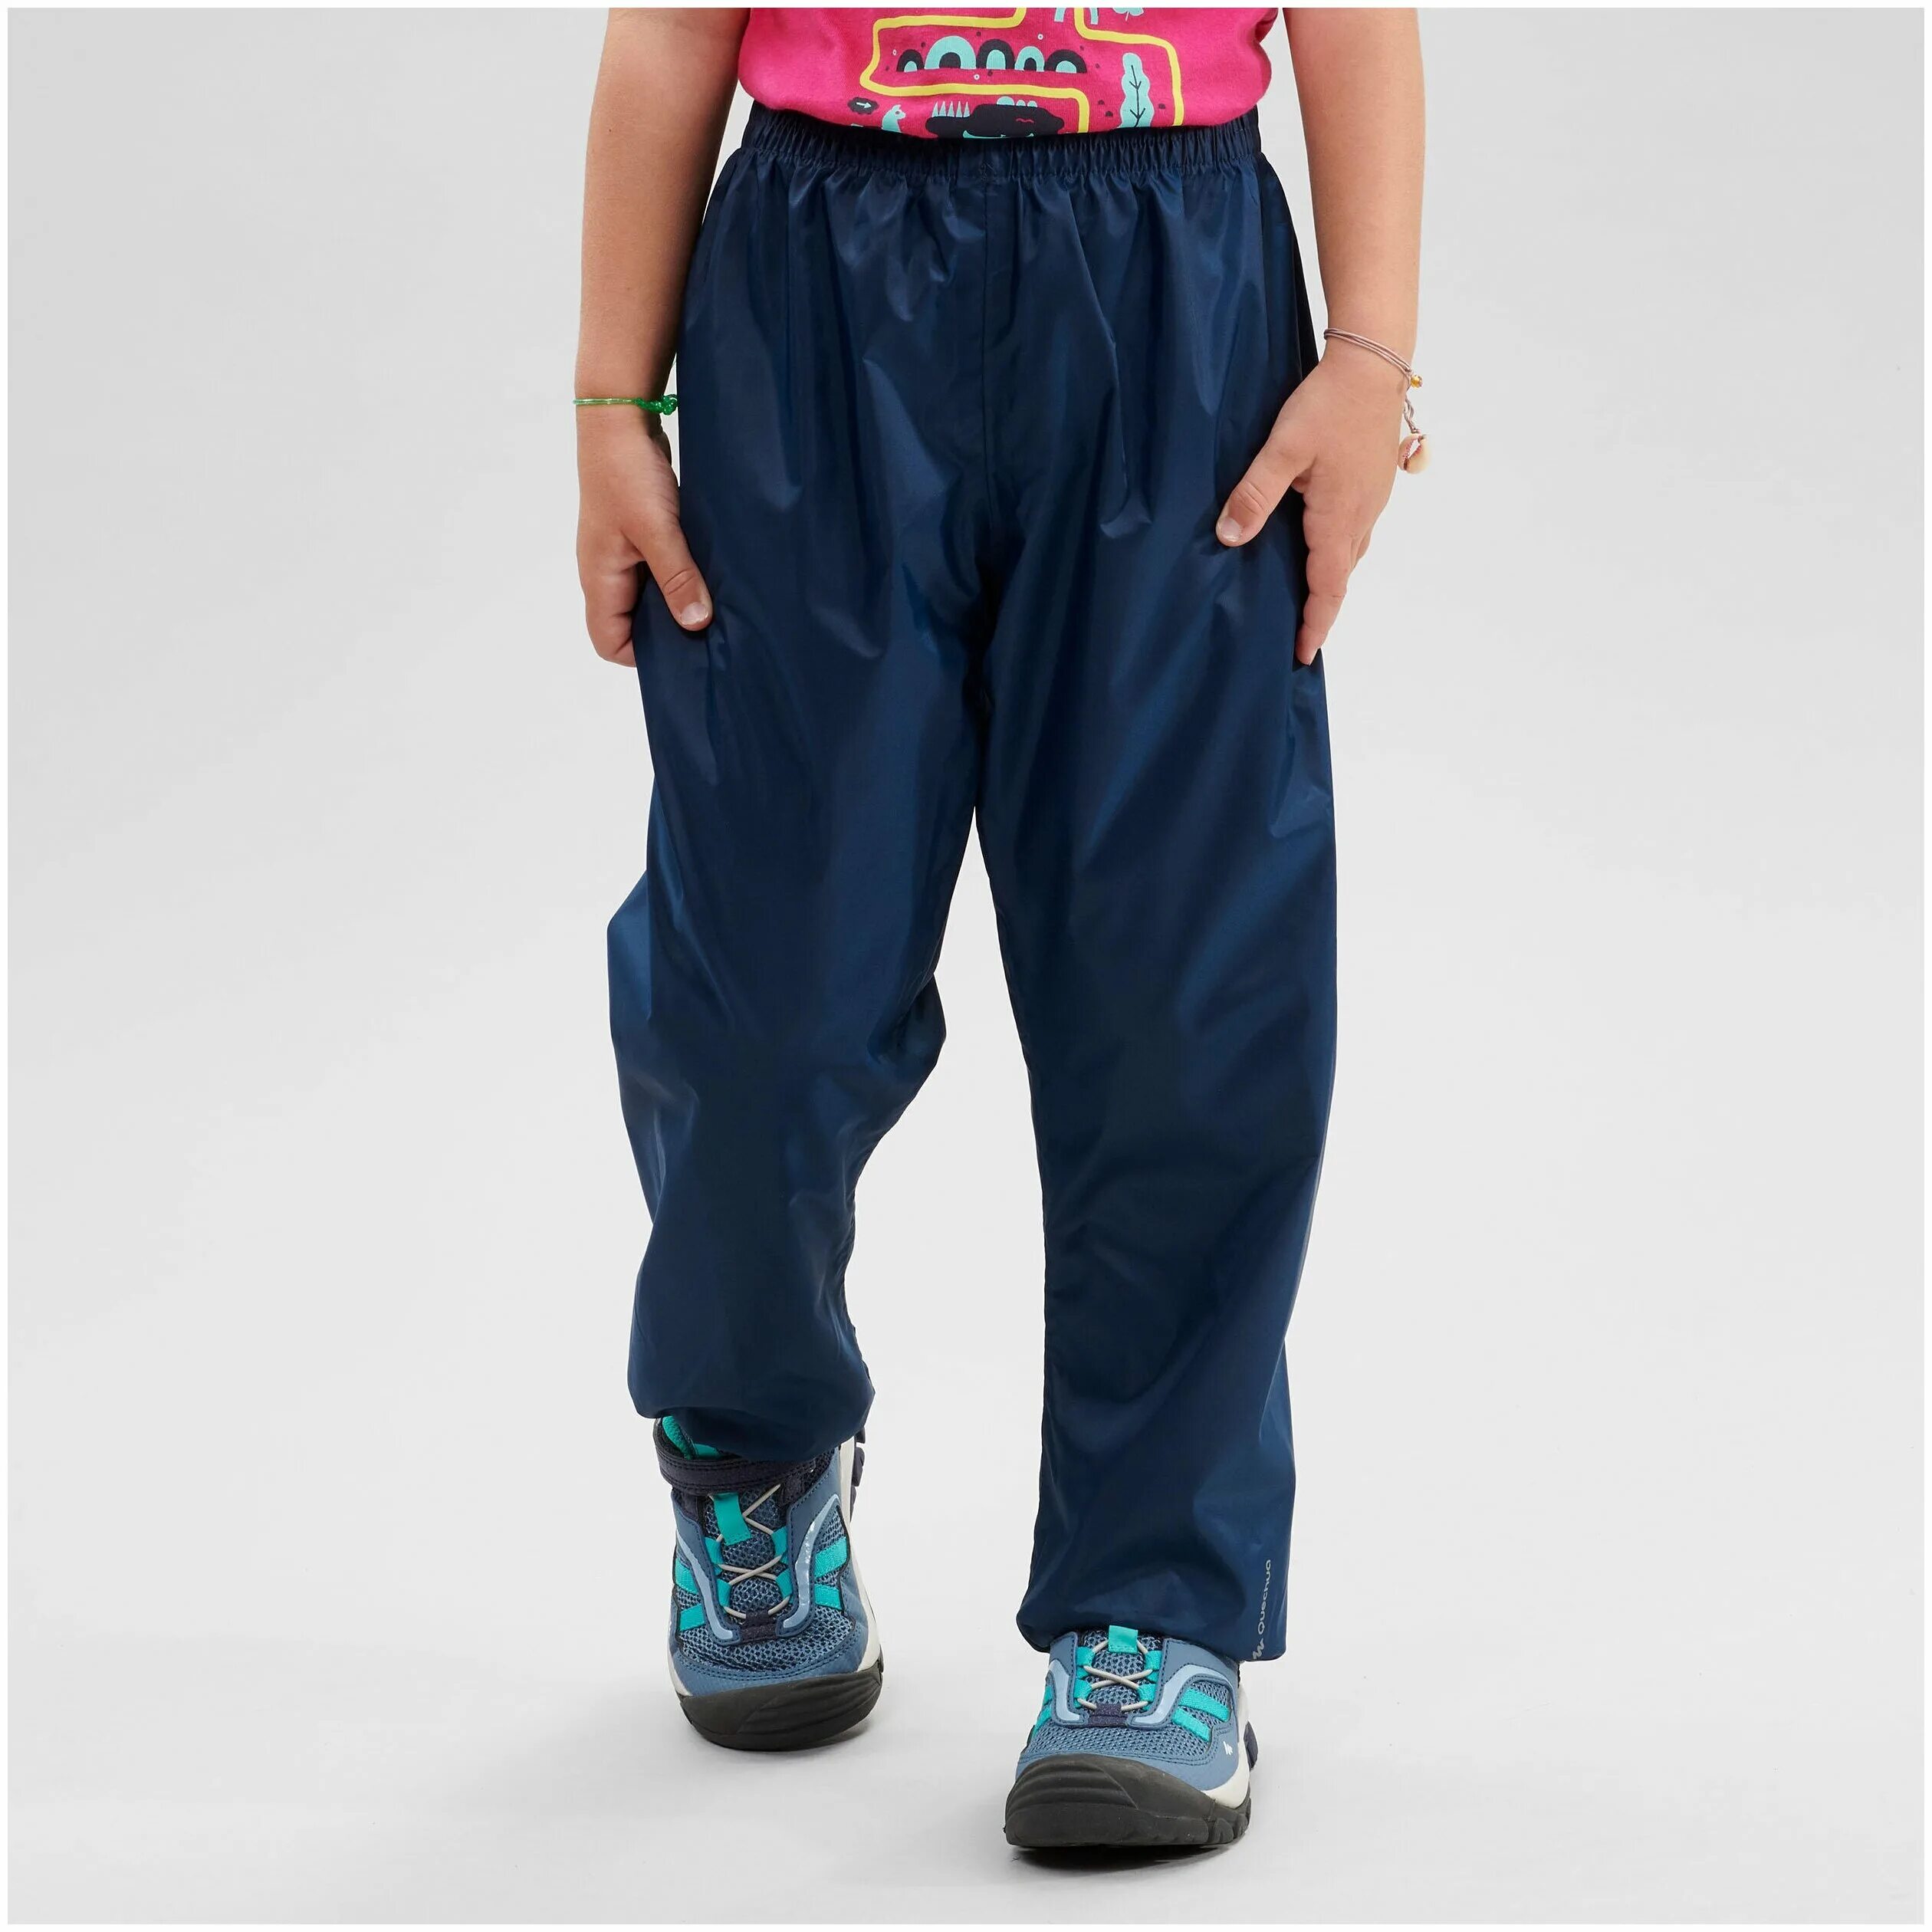 Непромокаемые штаны для мальчика. Quechua mh100 брюки. Декатлон непромокаемые штаны. Quechua брюки детские. Брюки mh100 Quechua артикул: 2769660.